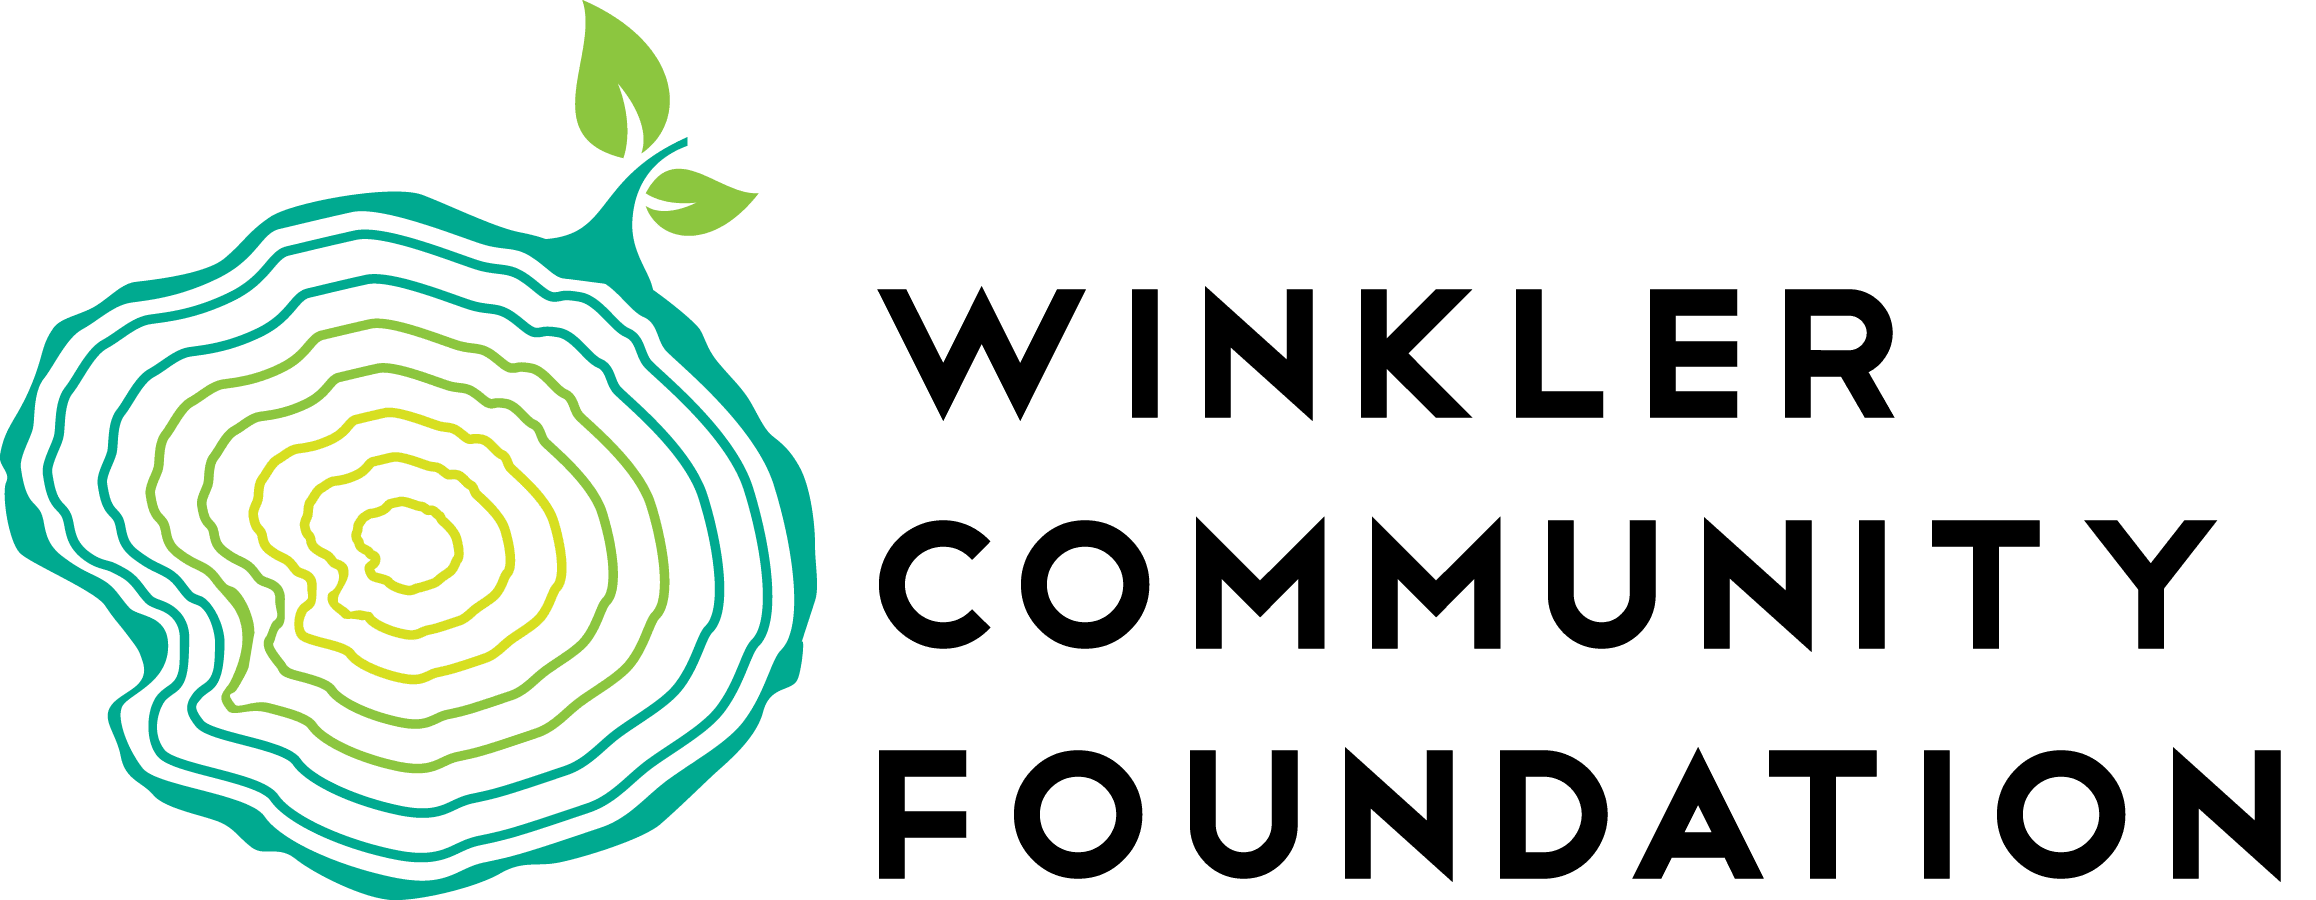 Winkler Community Foundation